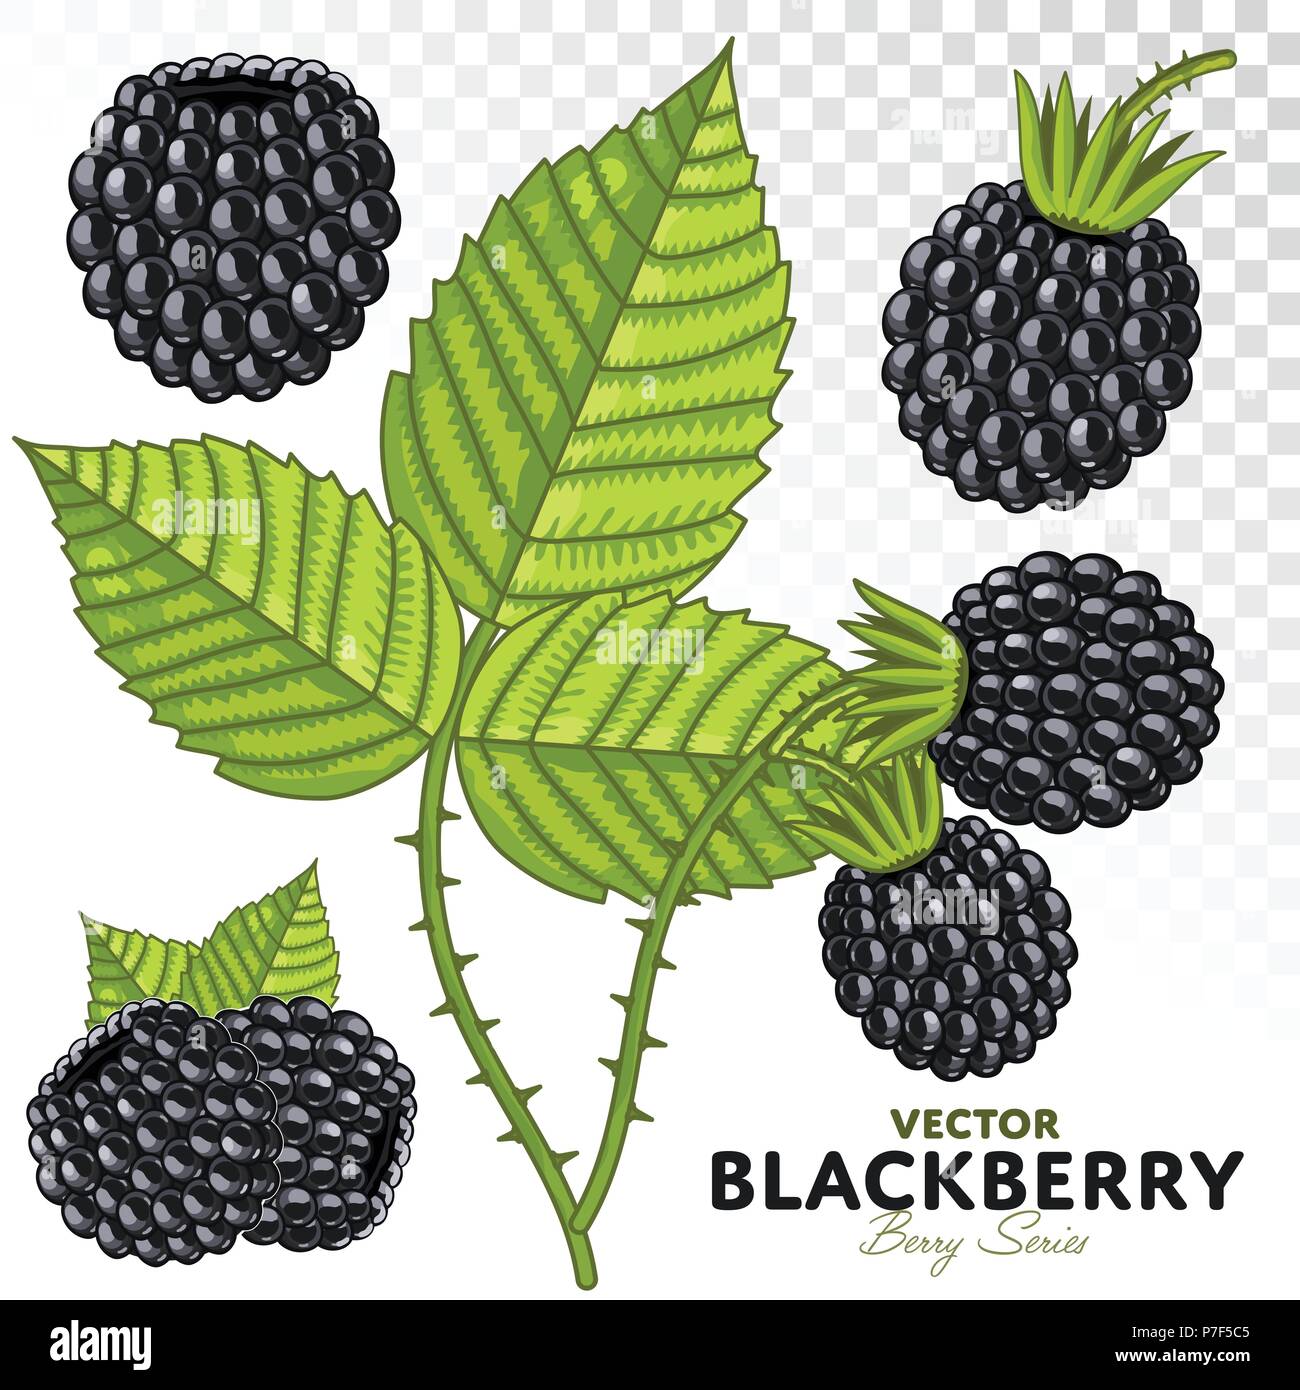 Blackberry Vektor. Stock Vektor